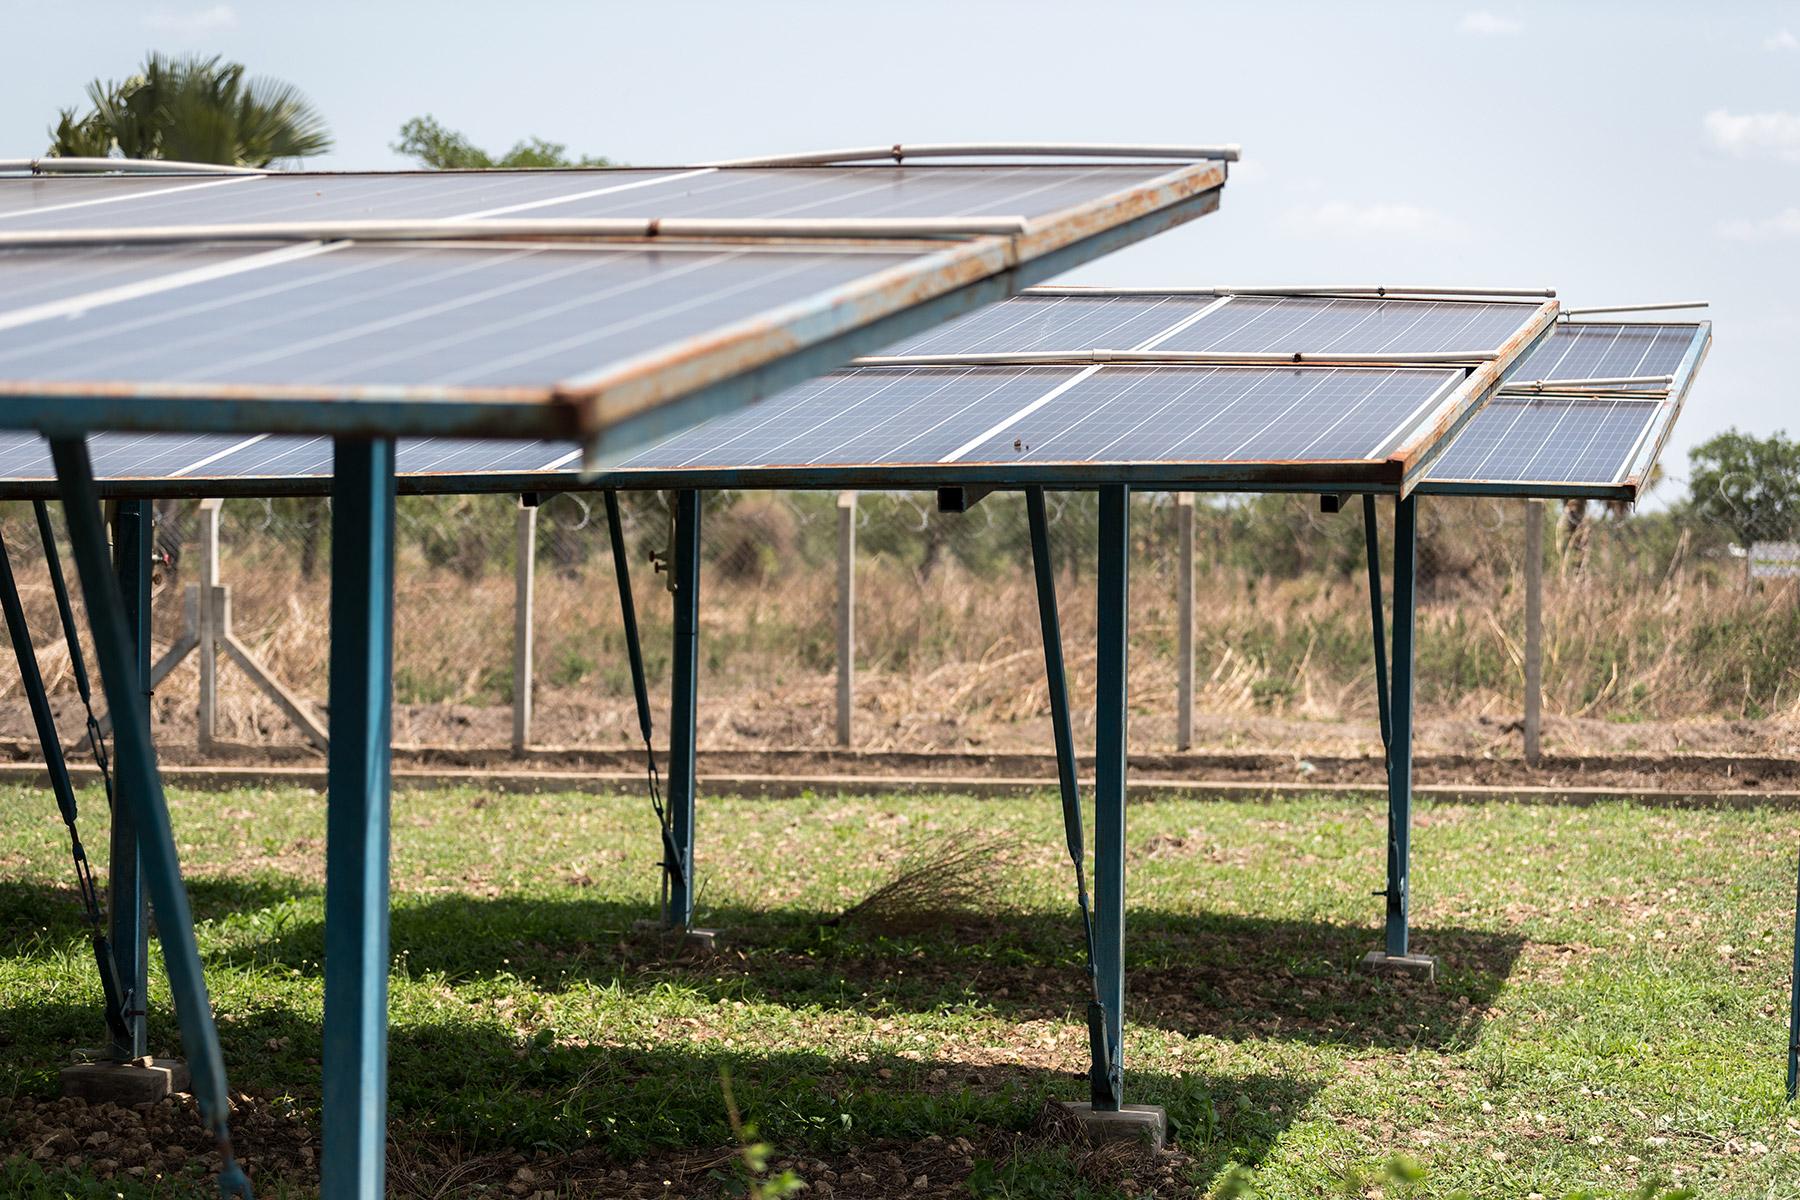 Solarmodule für eine solarbetriebene motorisierte Wasserpumpe im Dorf Orinya in der Siedlung Palorinya in Uganda. Der LWB setzt 14 hybride solarbetriebene Wasserpumpen und weitere 152 handbetriebene Bohrlöcher ein, um die Flüchtlinge mit Wasser zu versorgen. Foto: LWB/Albin Hillert